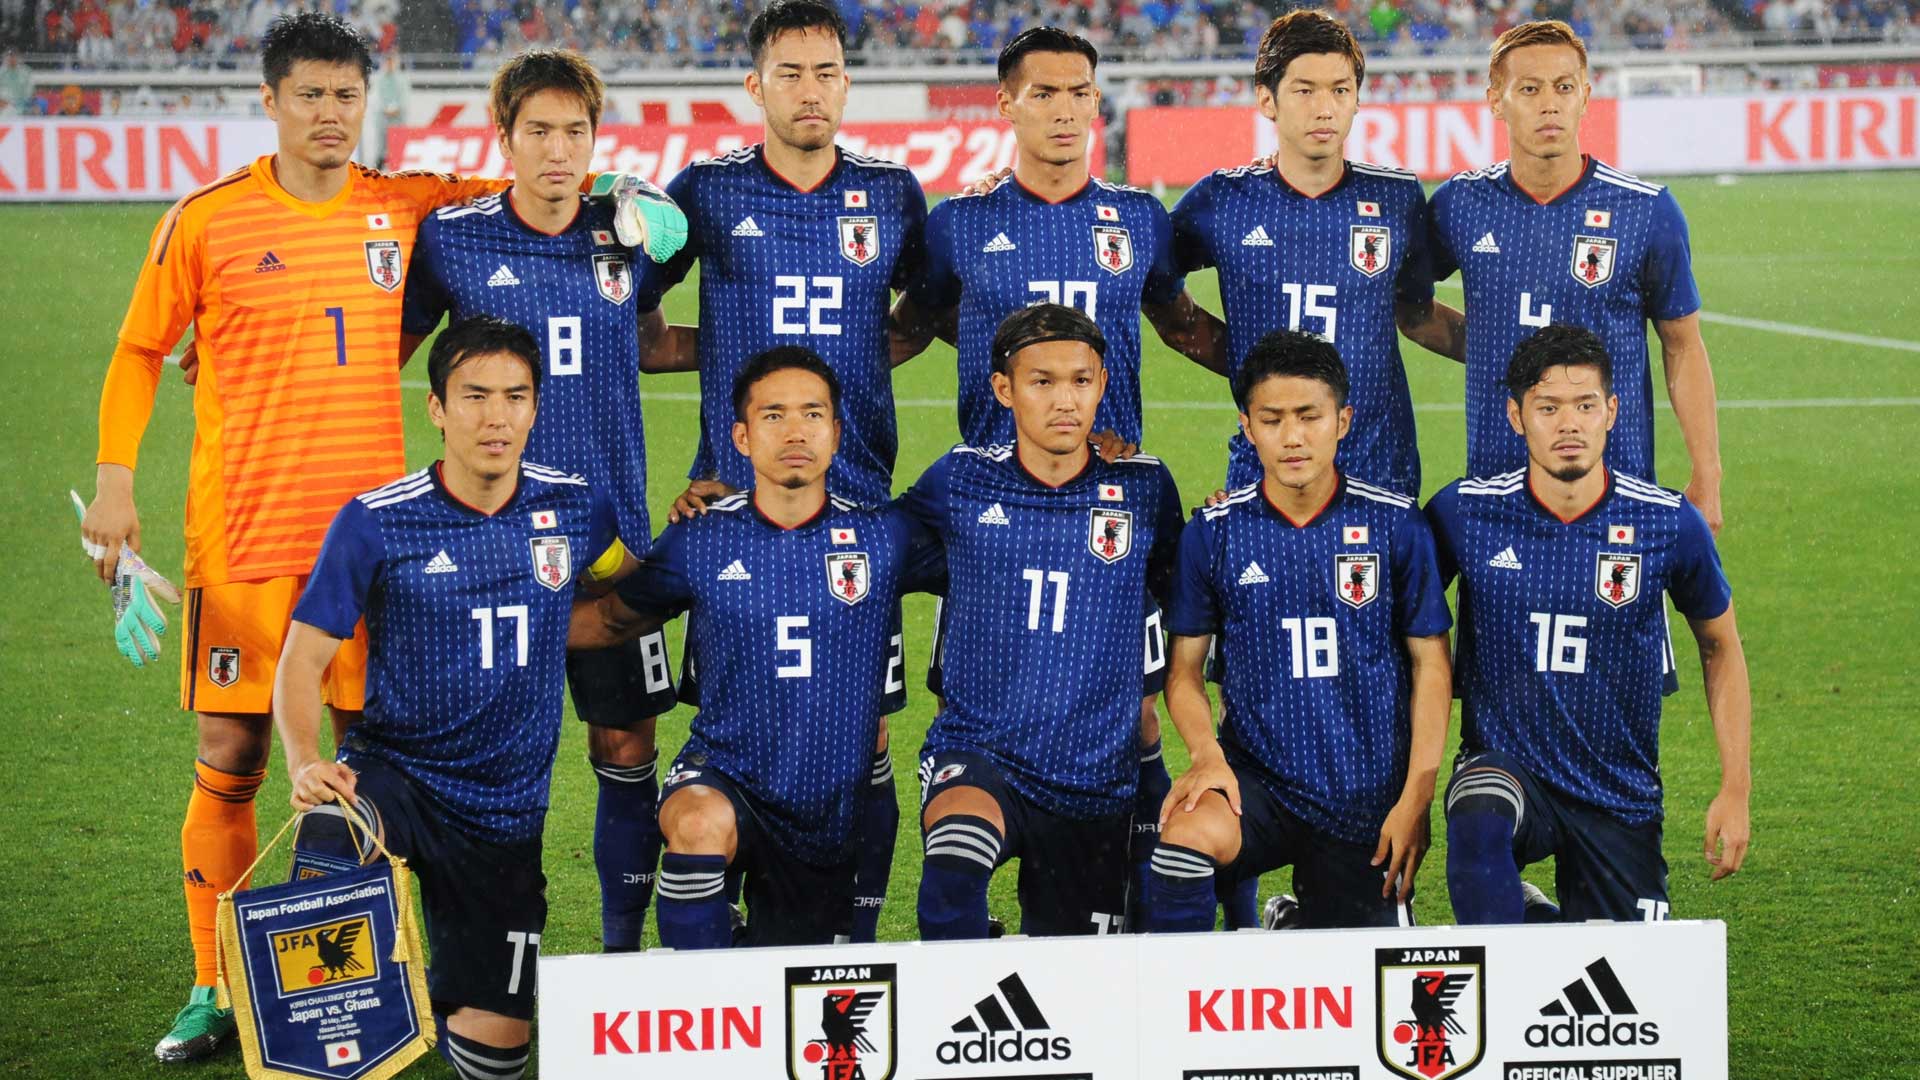 马斯克祝贺日本队2:1逆转西班牙队以小组第一身份从“死亡之组”出线
